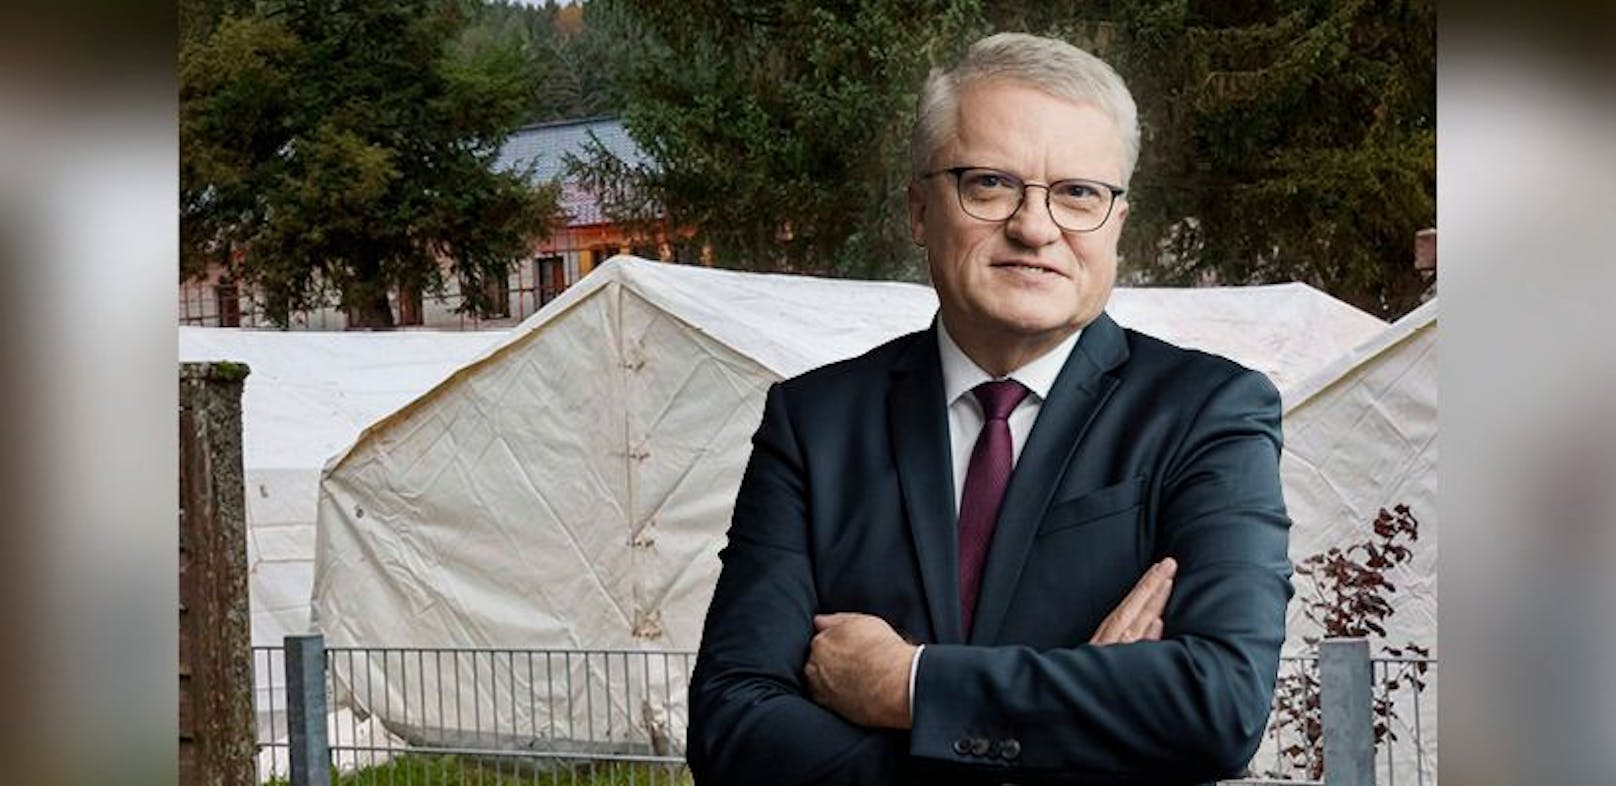 Asyl-Zelte – Politiker warnt vor "zweitem Traiskirchen"